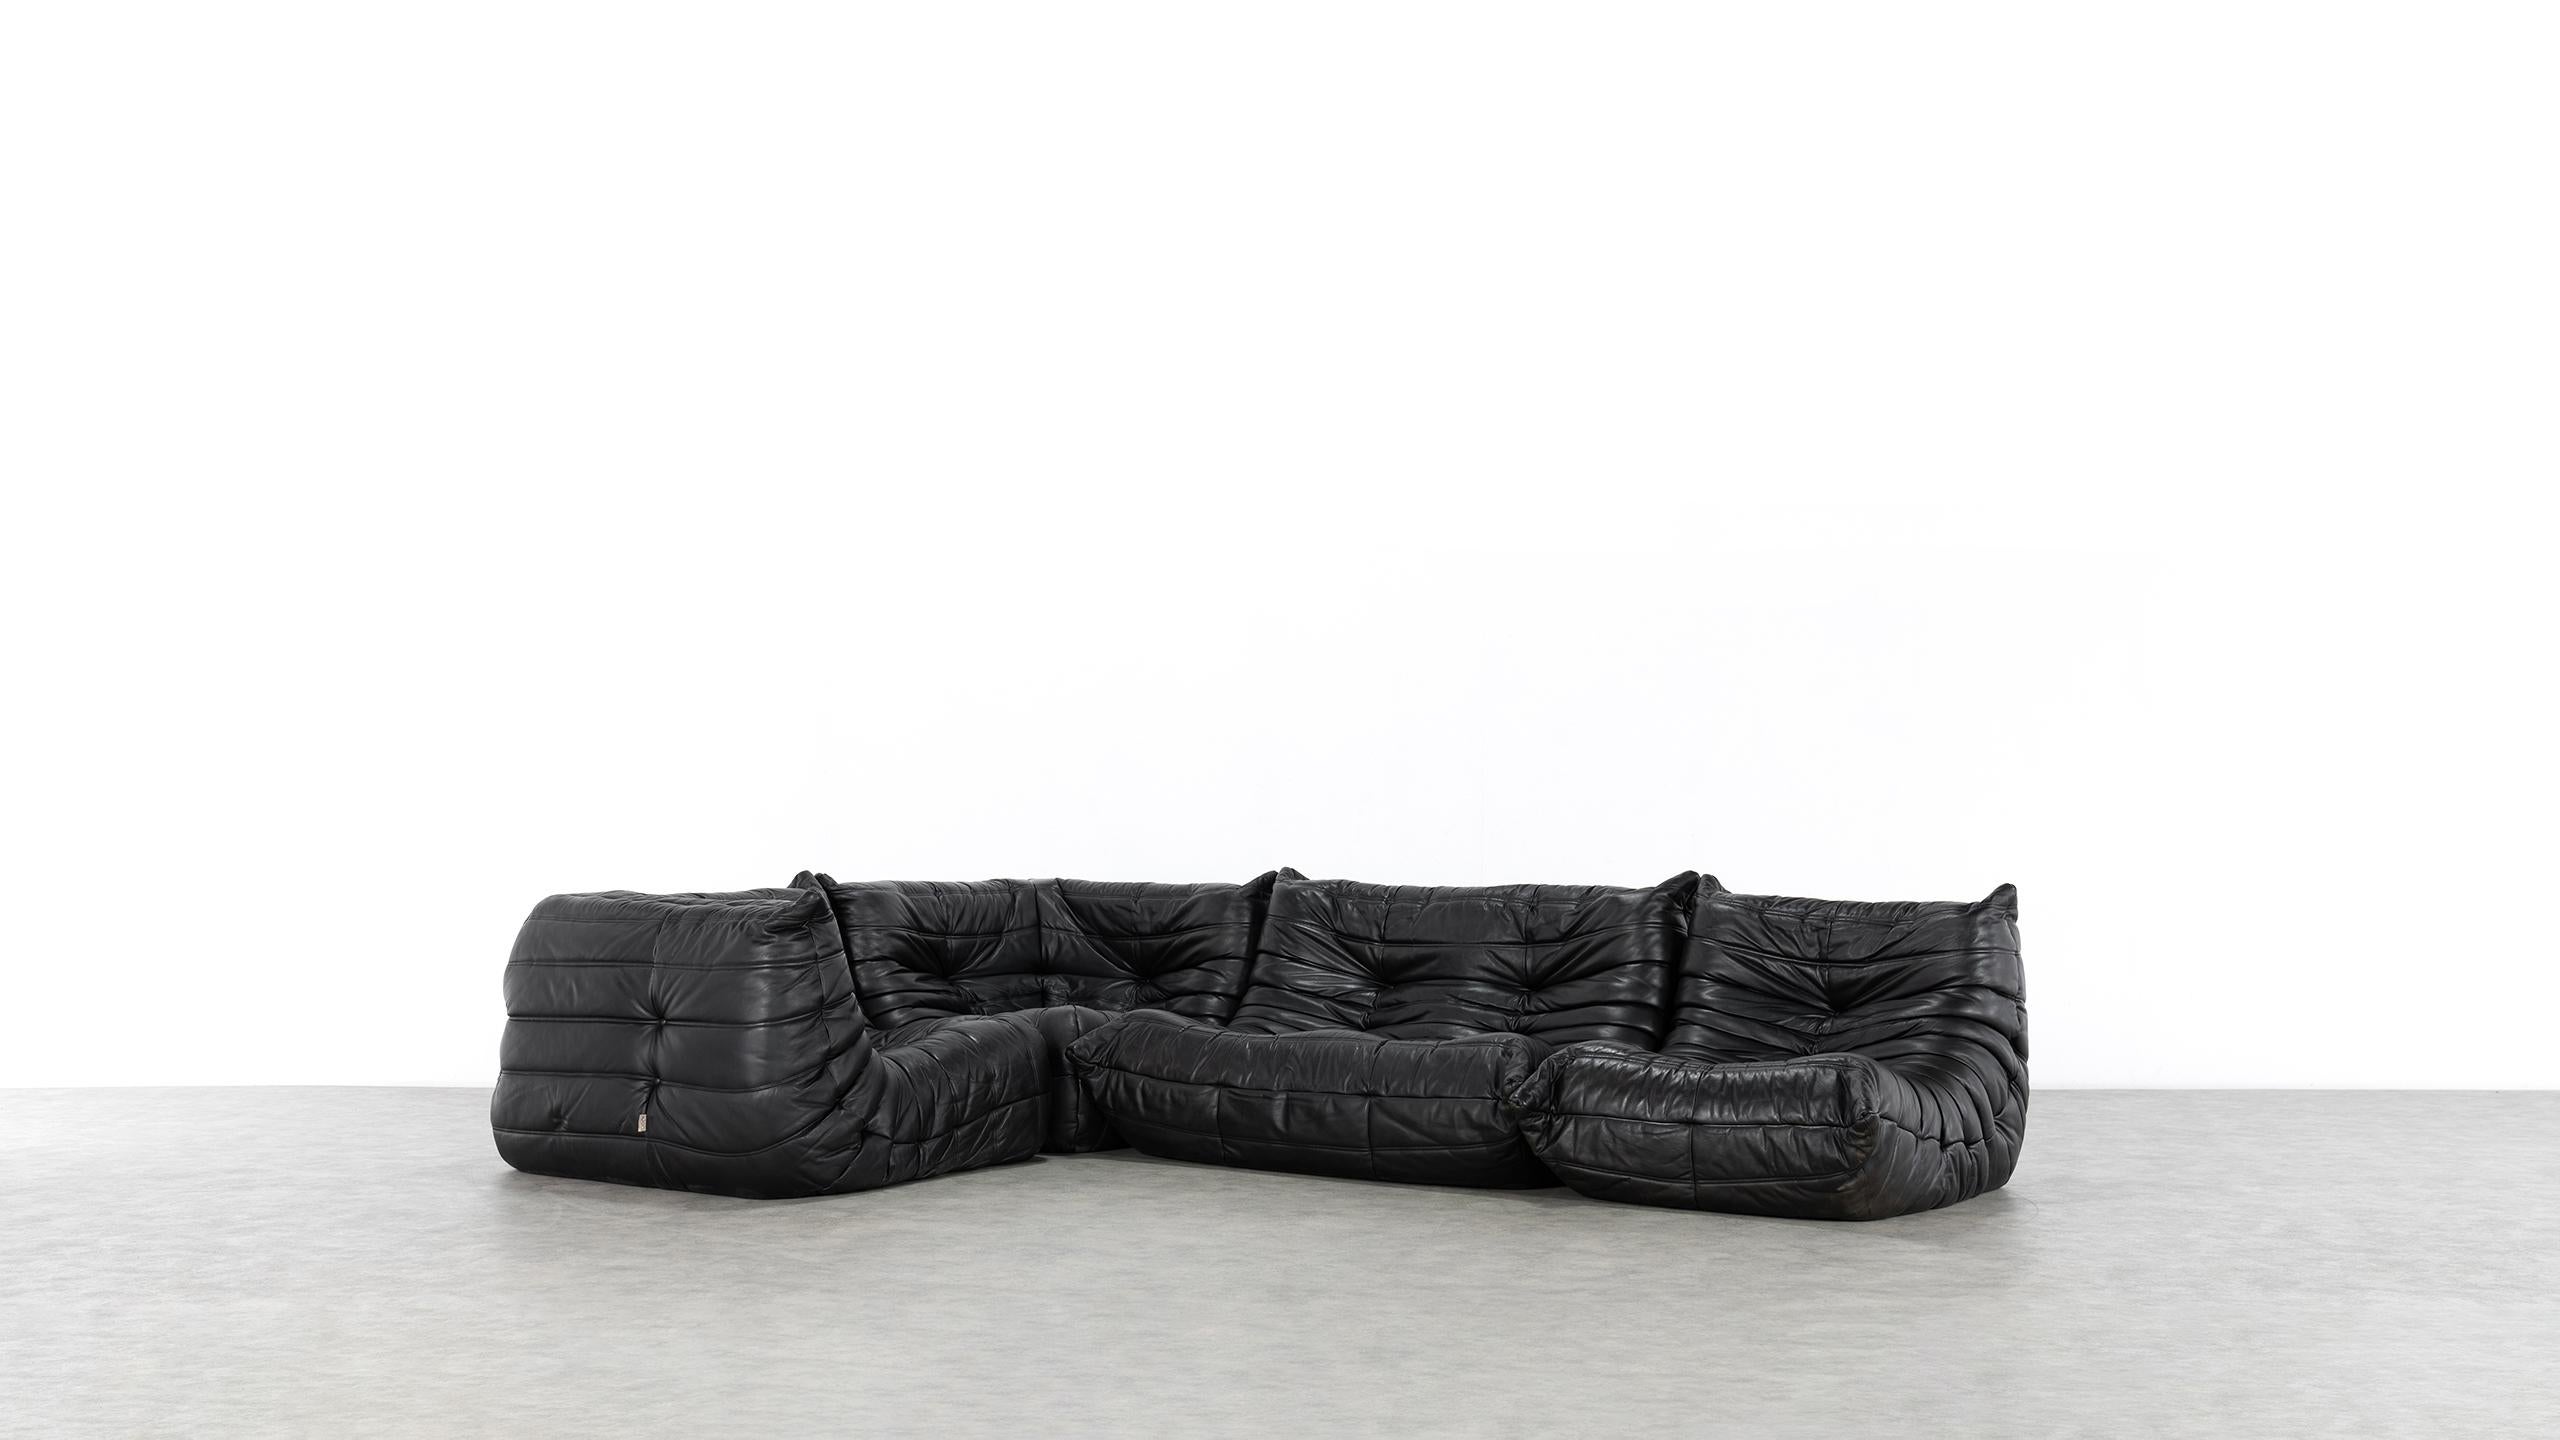 Togo Sofa, 1974 by Michel Ducaroy + Ligne Roset, Giant Landscape, Black Leather 3